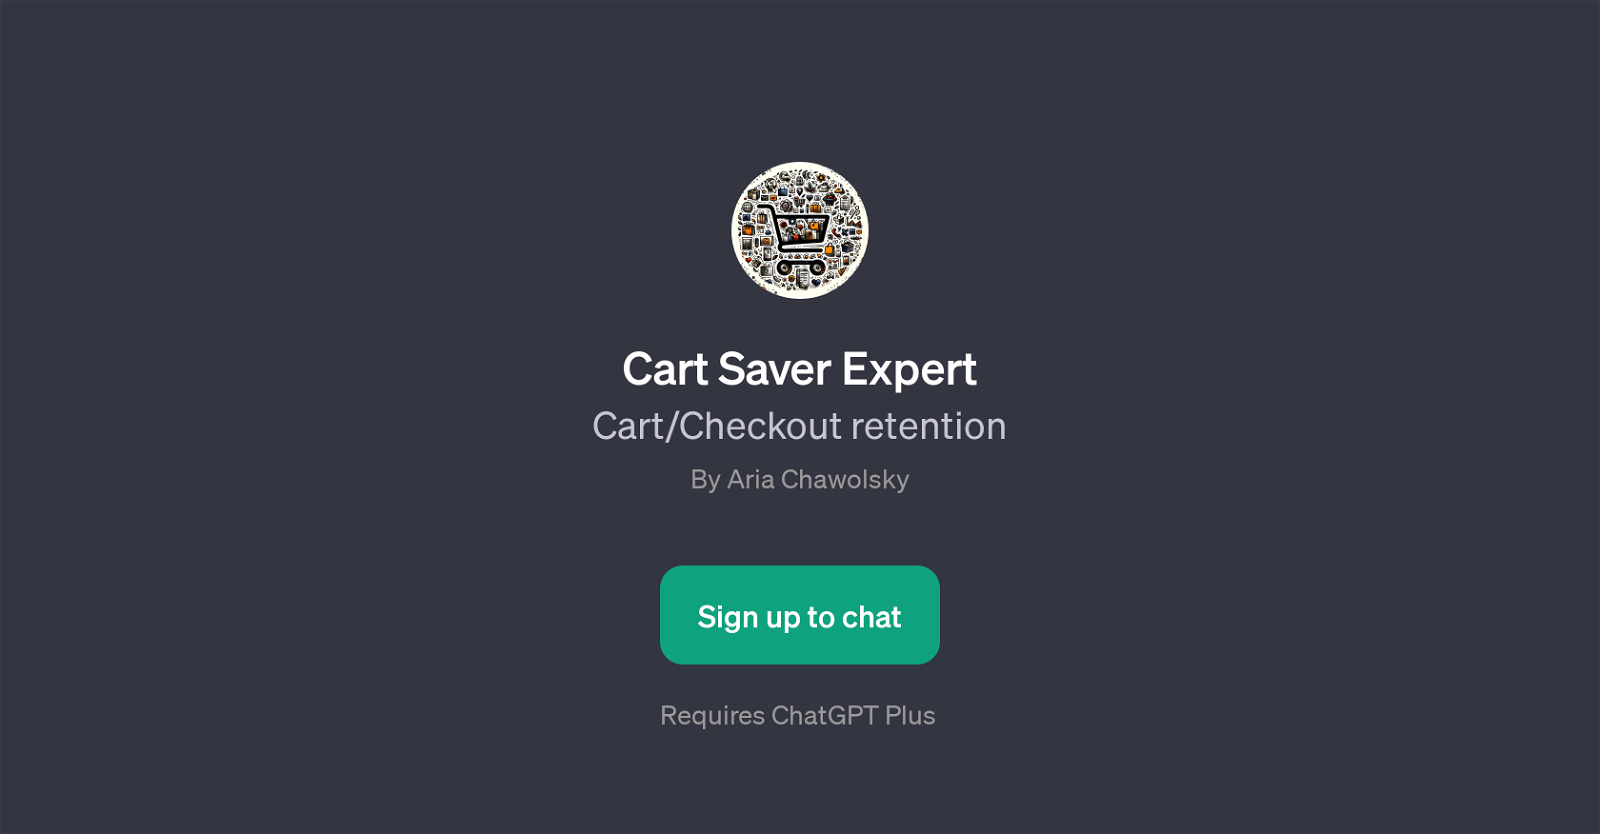 Cart Saver Expert website